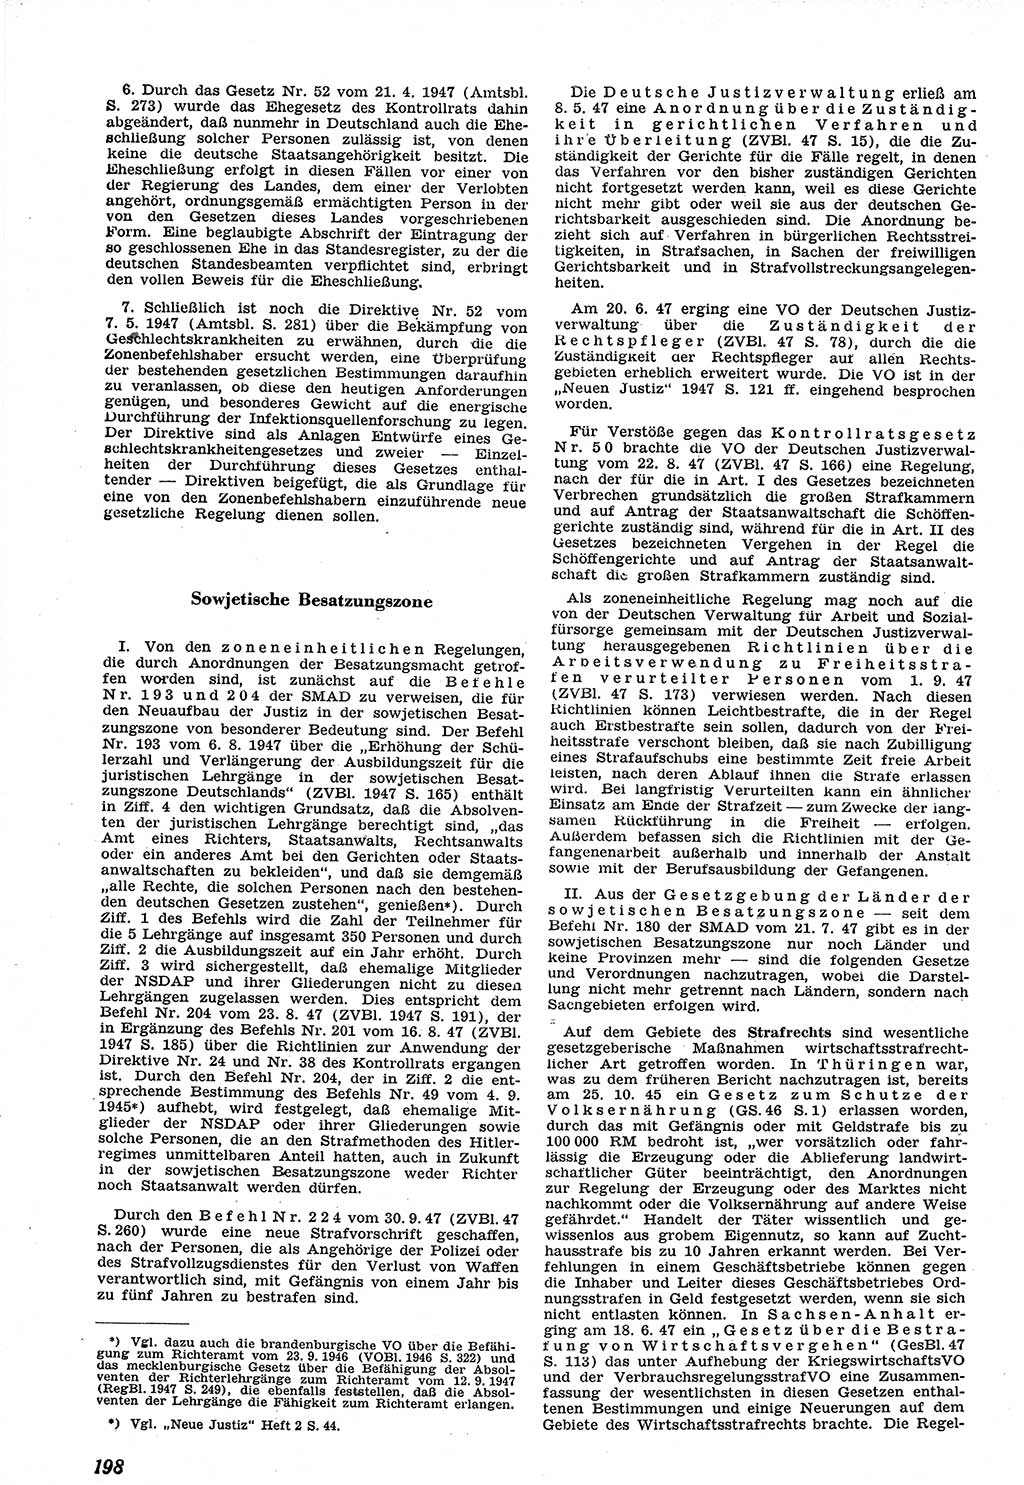 Neue Justiz (NJ), Zeitschrift für Recht und Rechtswissenschaft [Sowjetische Besatzungszone (SBZ) Deutschland], 1. Jahrgang 1947, Seite 198 (NJ SBZ Dtl. 1947, S. 198)